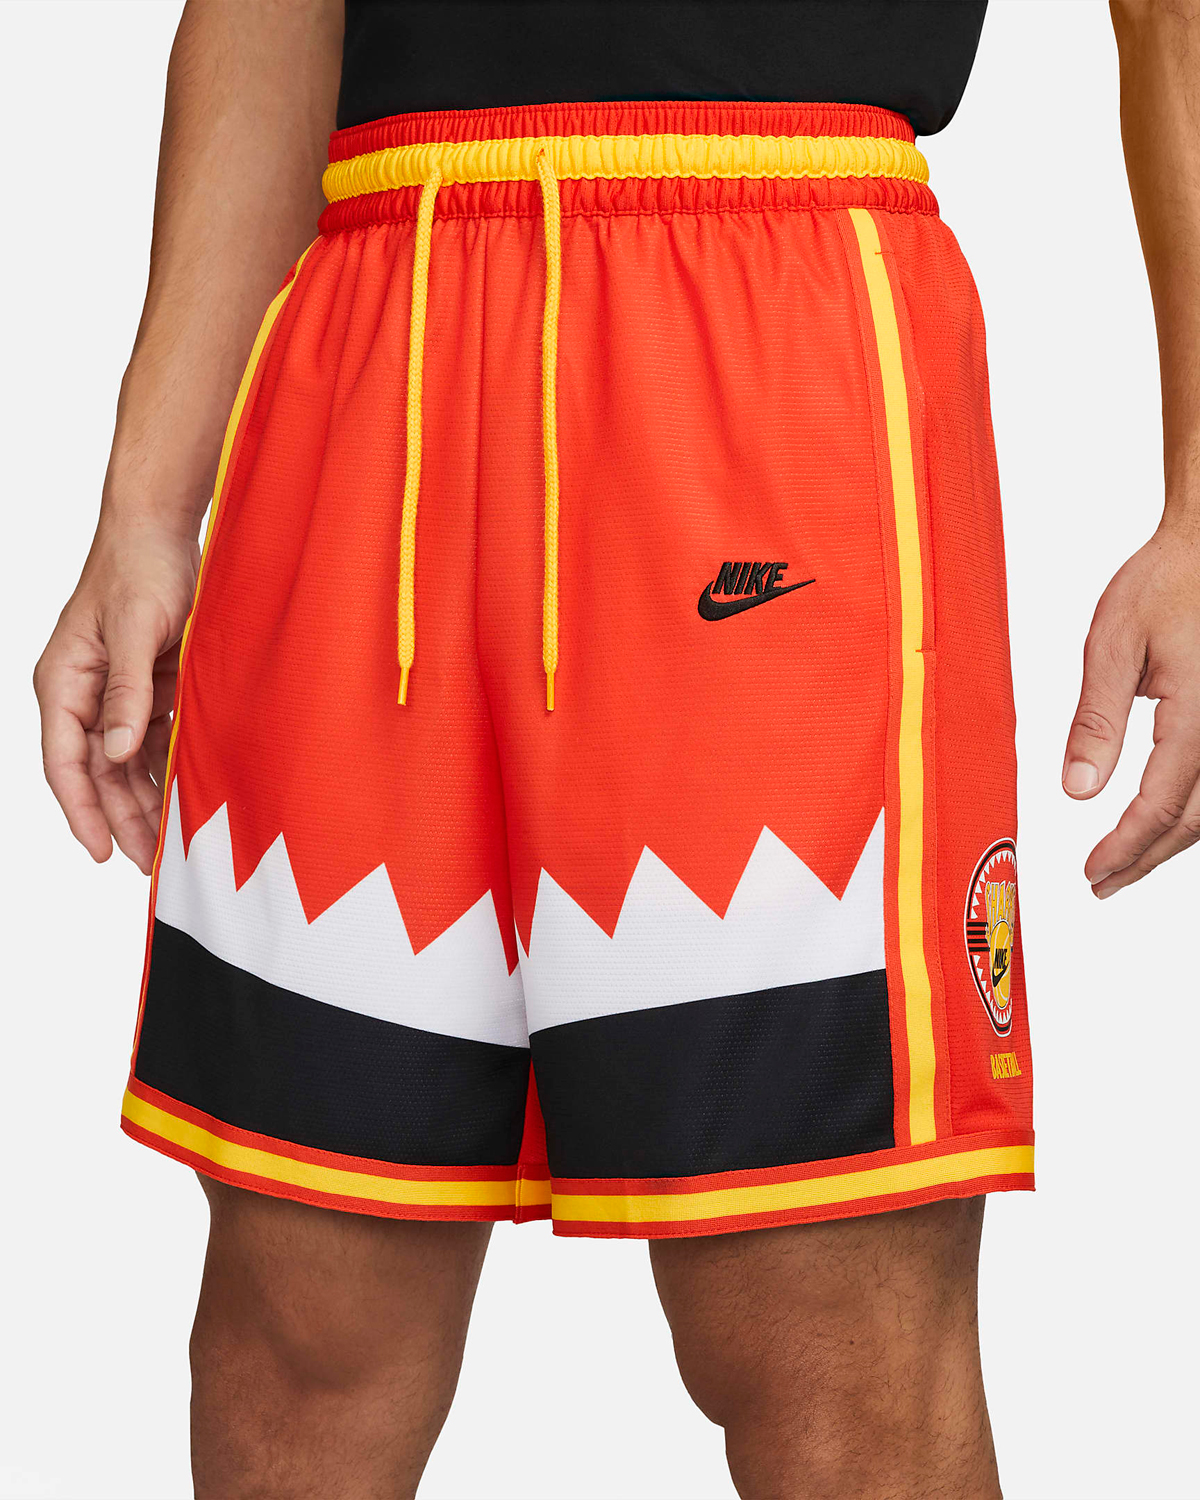 Nike-Habanero-Red-Shorts